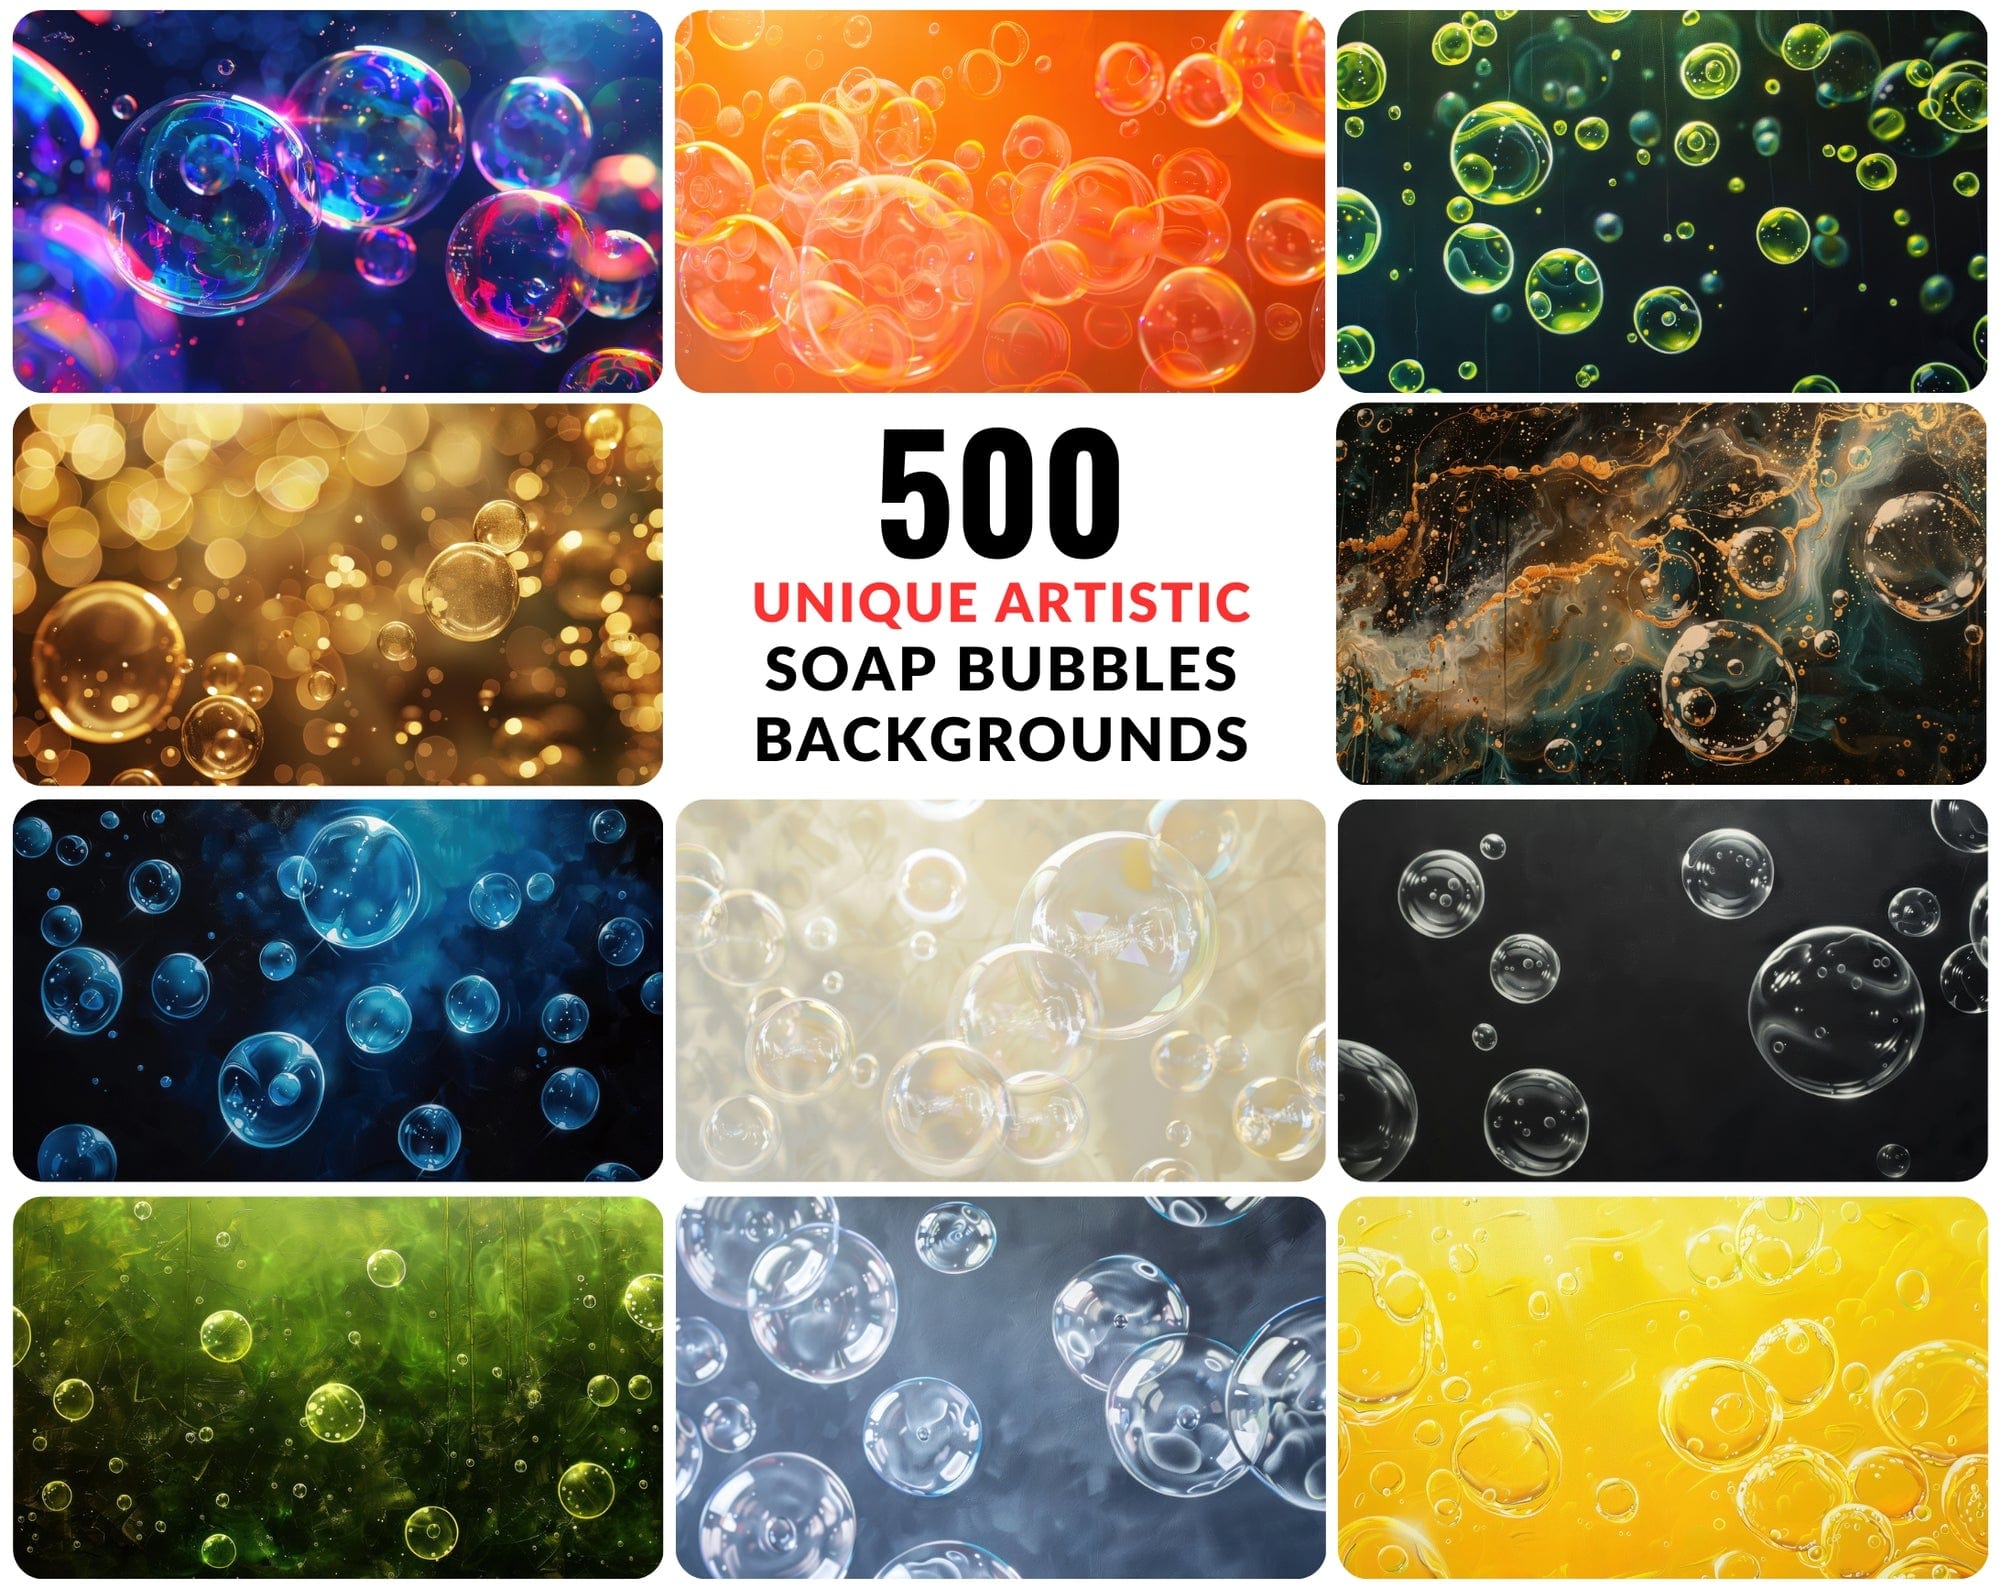 500 Unique Artistic Colourful Soap Bubbles Background Images Digital Download Sumobundle